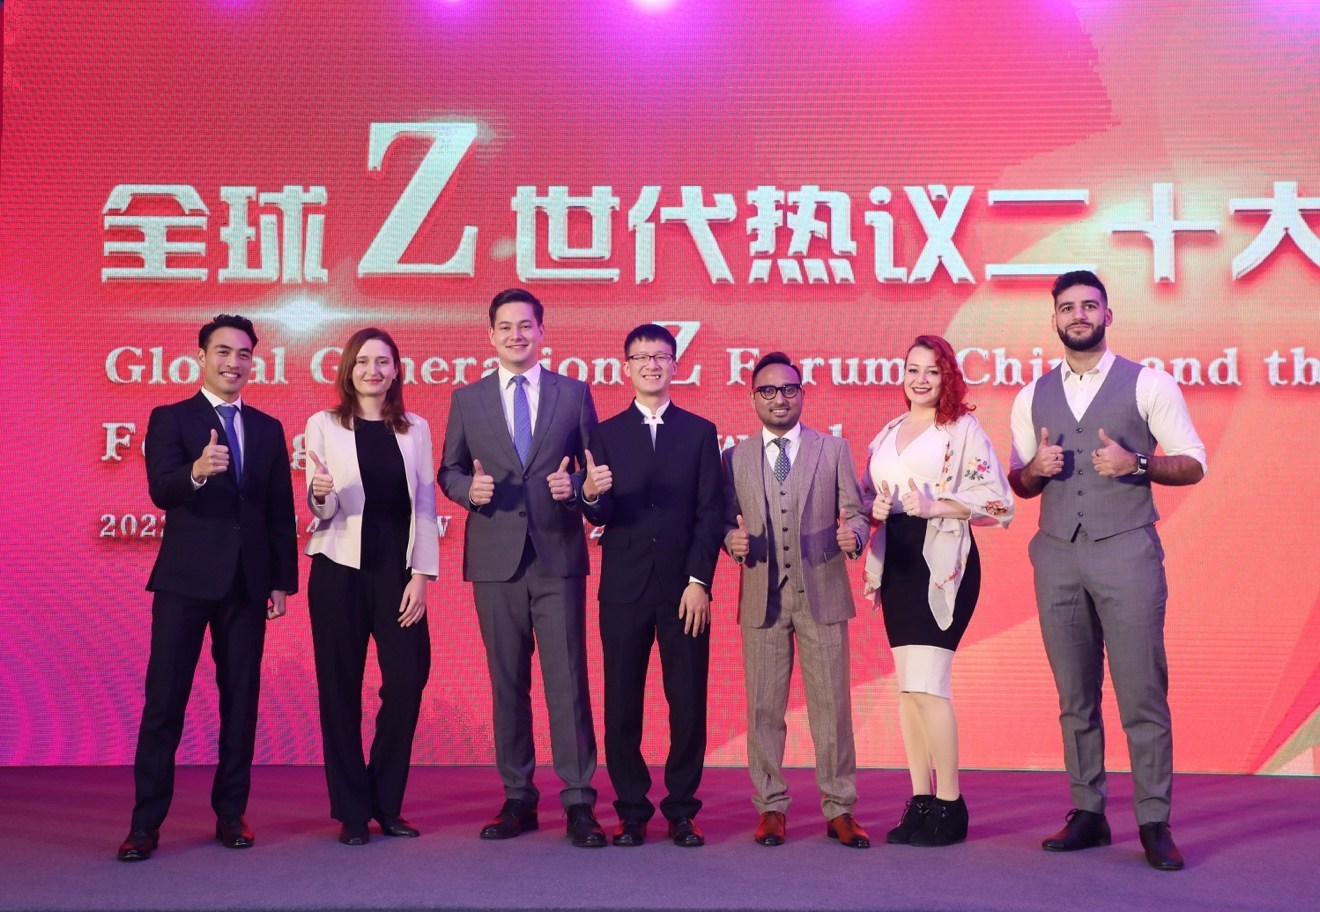 Des jeunes partager leurs réflexions sur la Chine et le monde lors du Forum Génération Z 2022 à l'Université Tsinghua